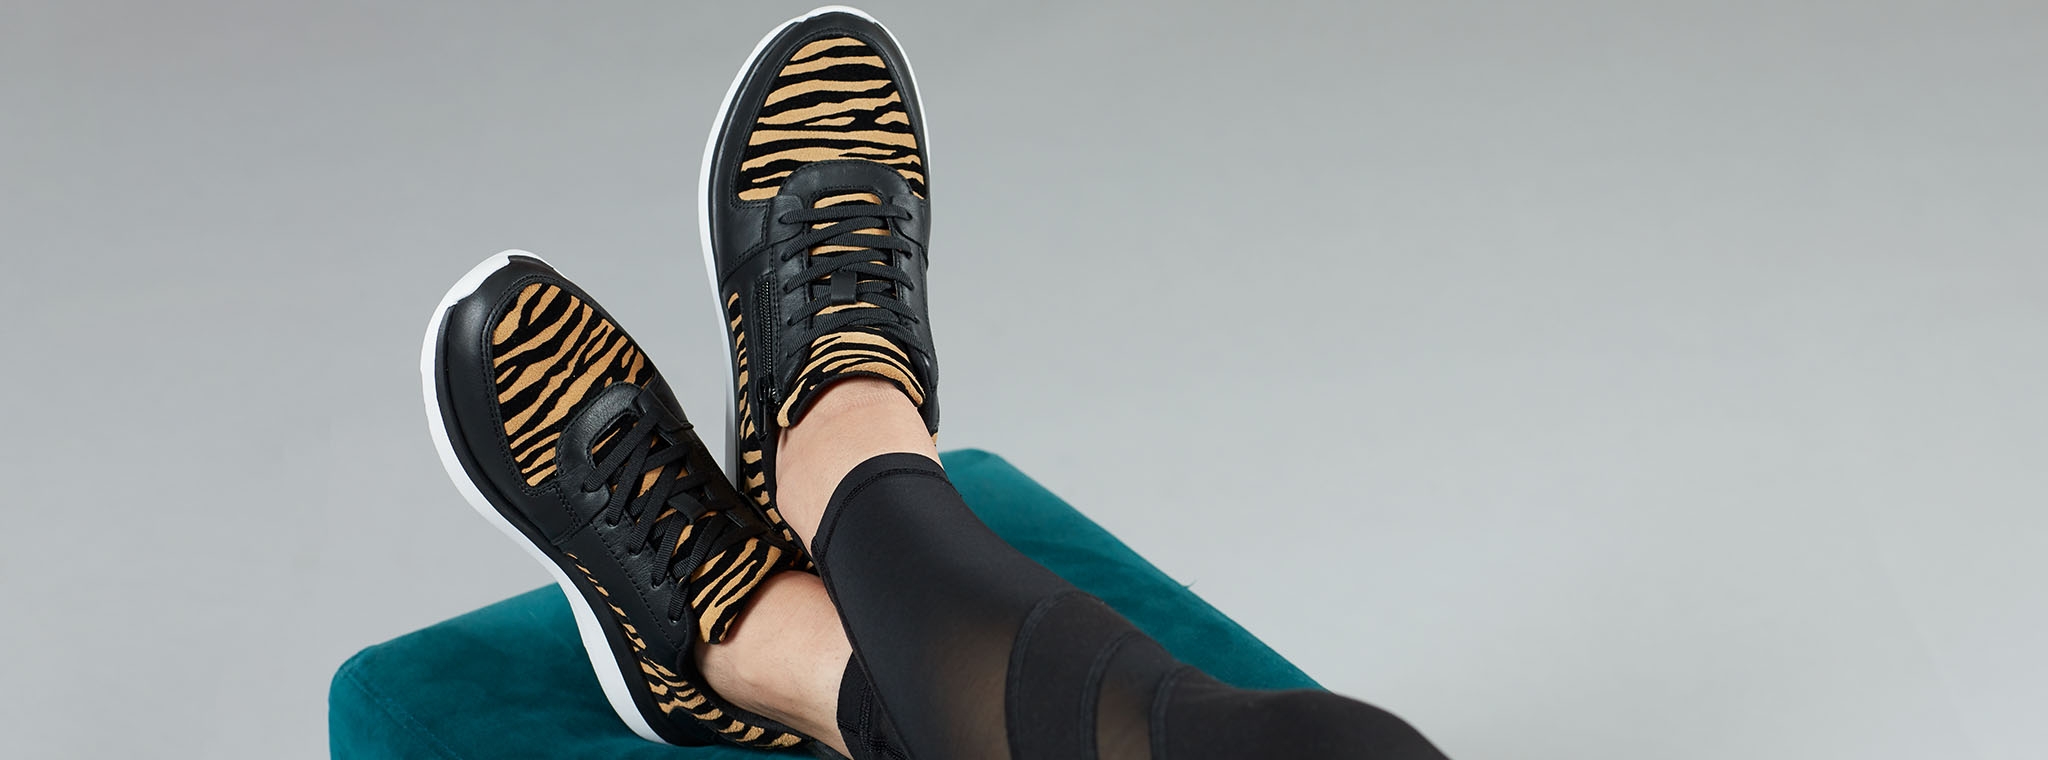 vionic leopard sneakers